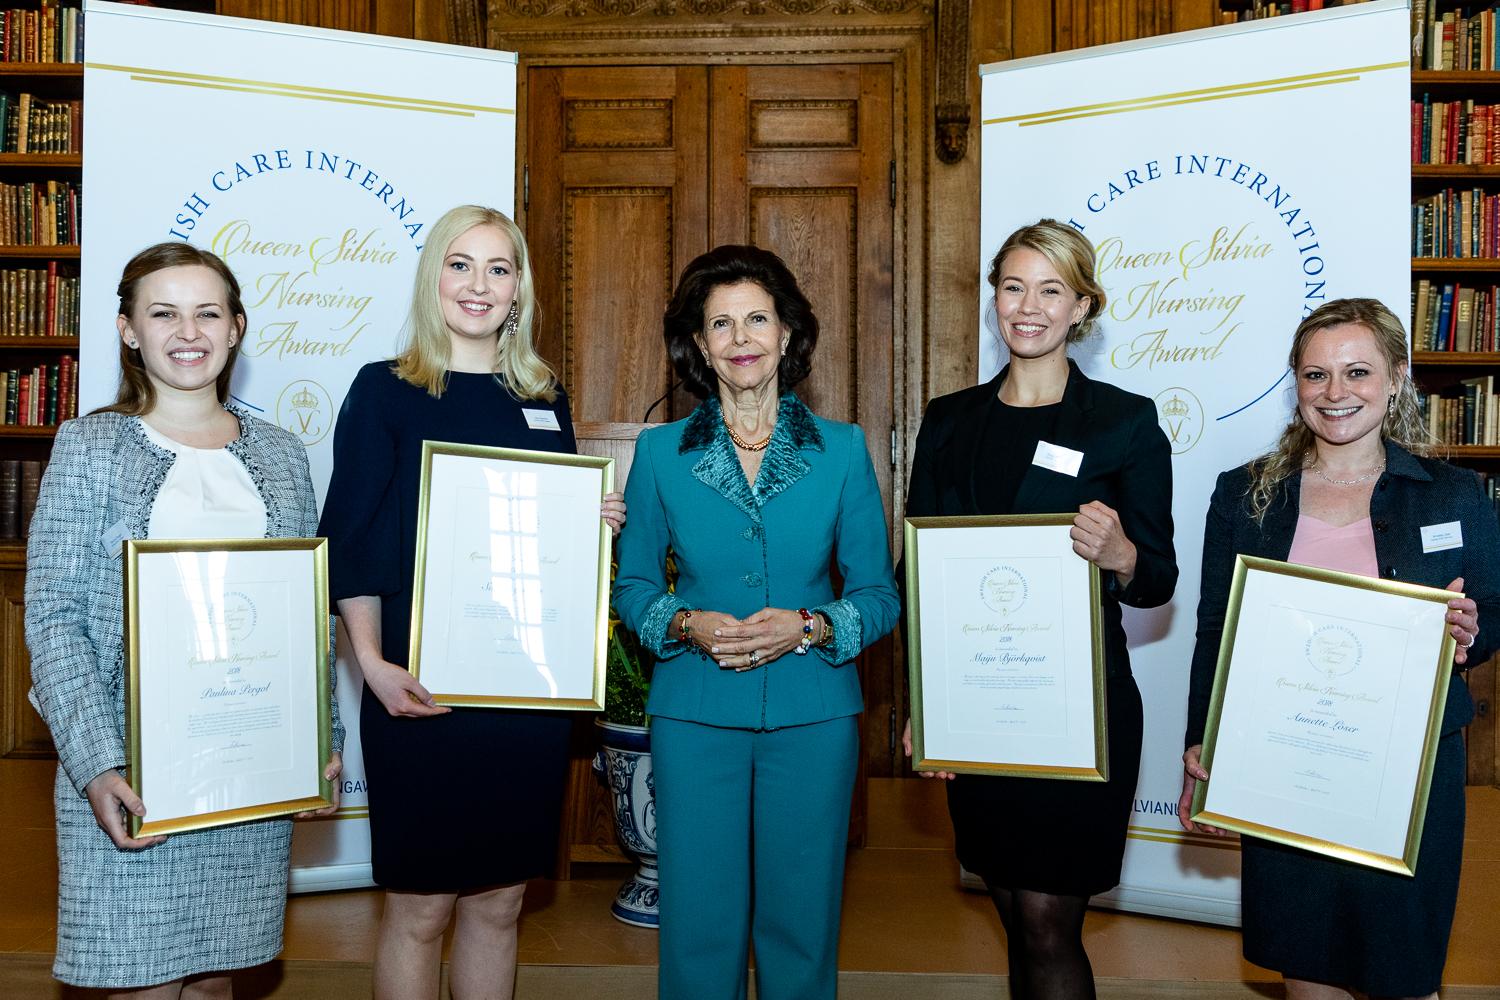 QUEEN SILVIA NURSING AWARD Nagroda Pielęgniarska Królowej Szwecji - ruszyła V edycja